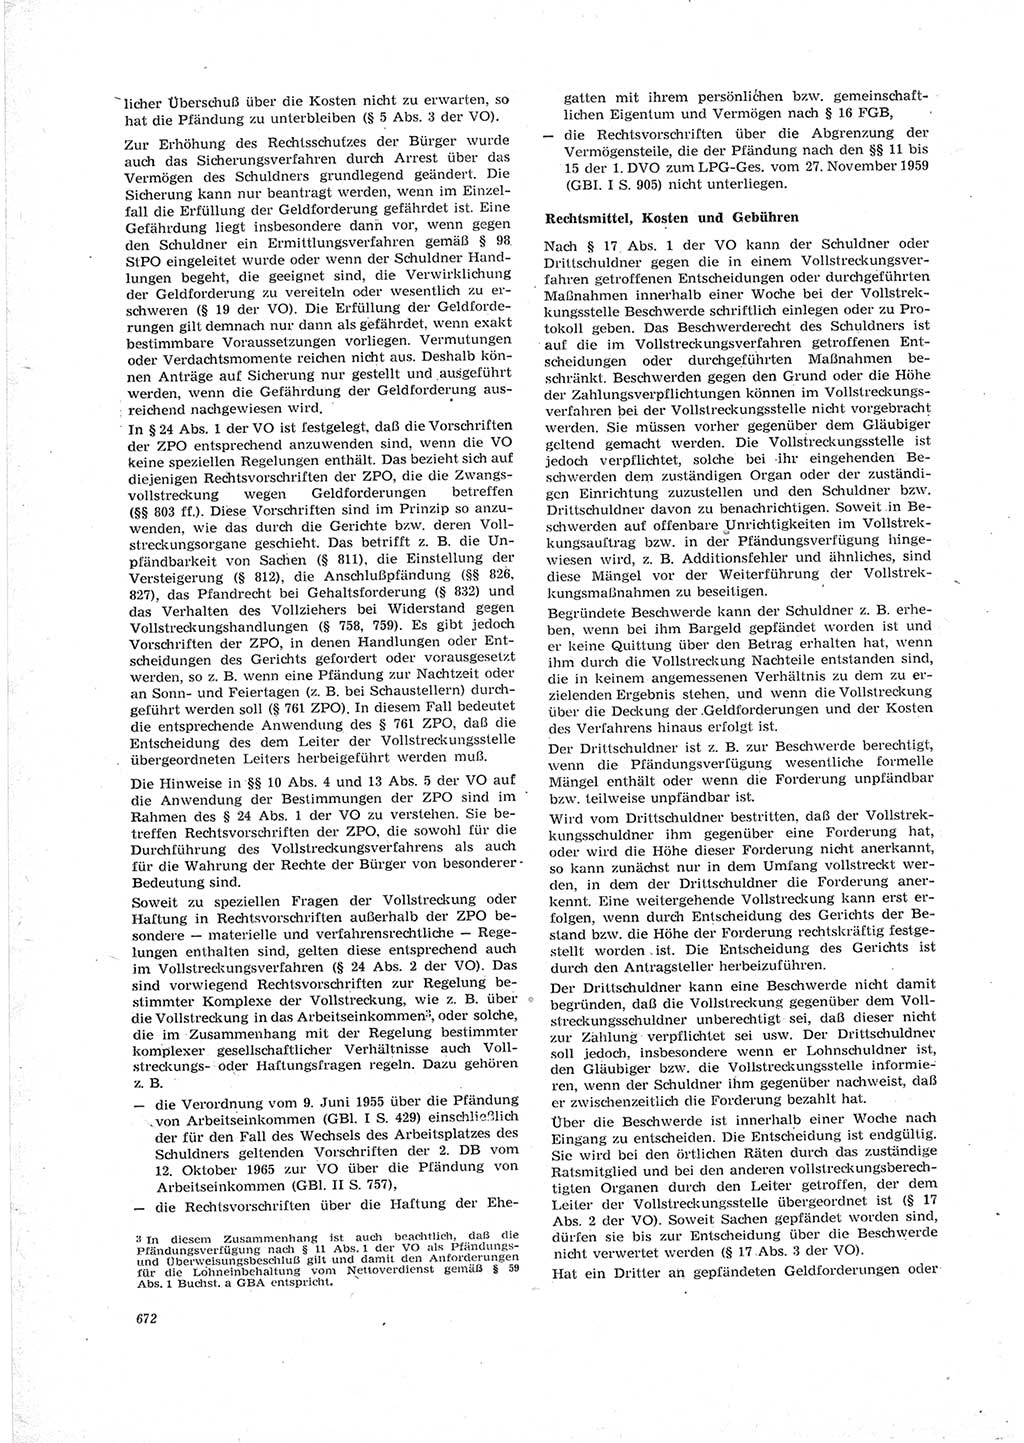 Neue Justiz (NJ), Zeitschrift für Recht und Rechtswissenschaft [Deutsche Demokratische Republik (DDR)], 23. Jahrgang 1969, Seite 672 (NJ DDR 1969, S. 672)